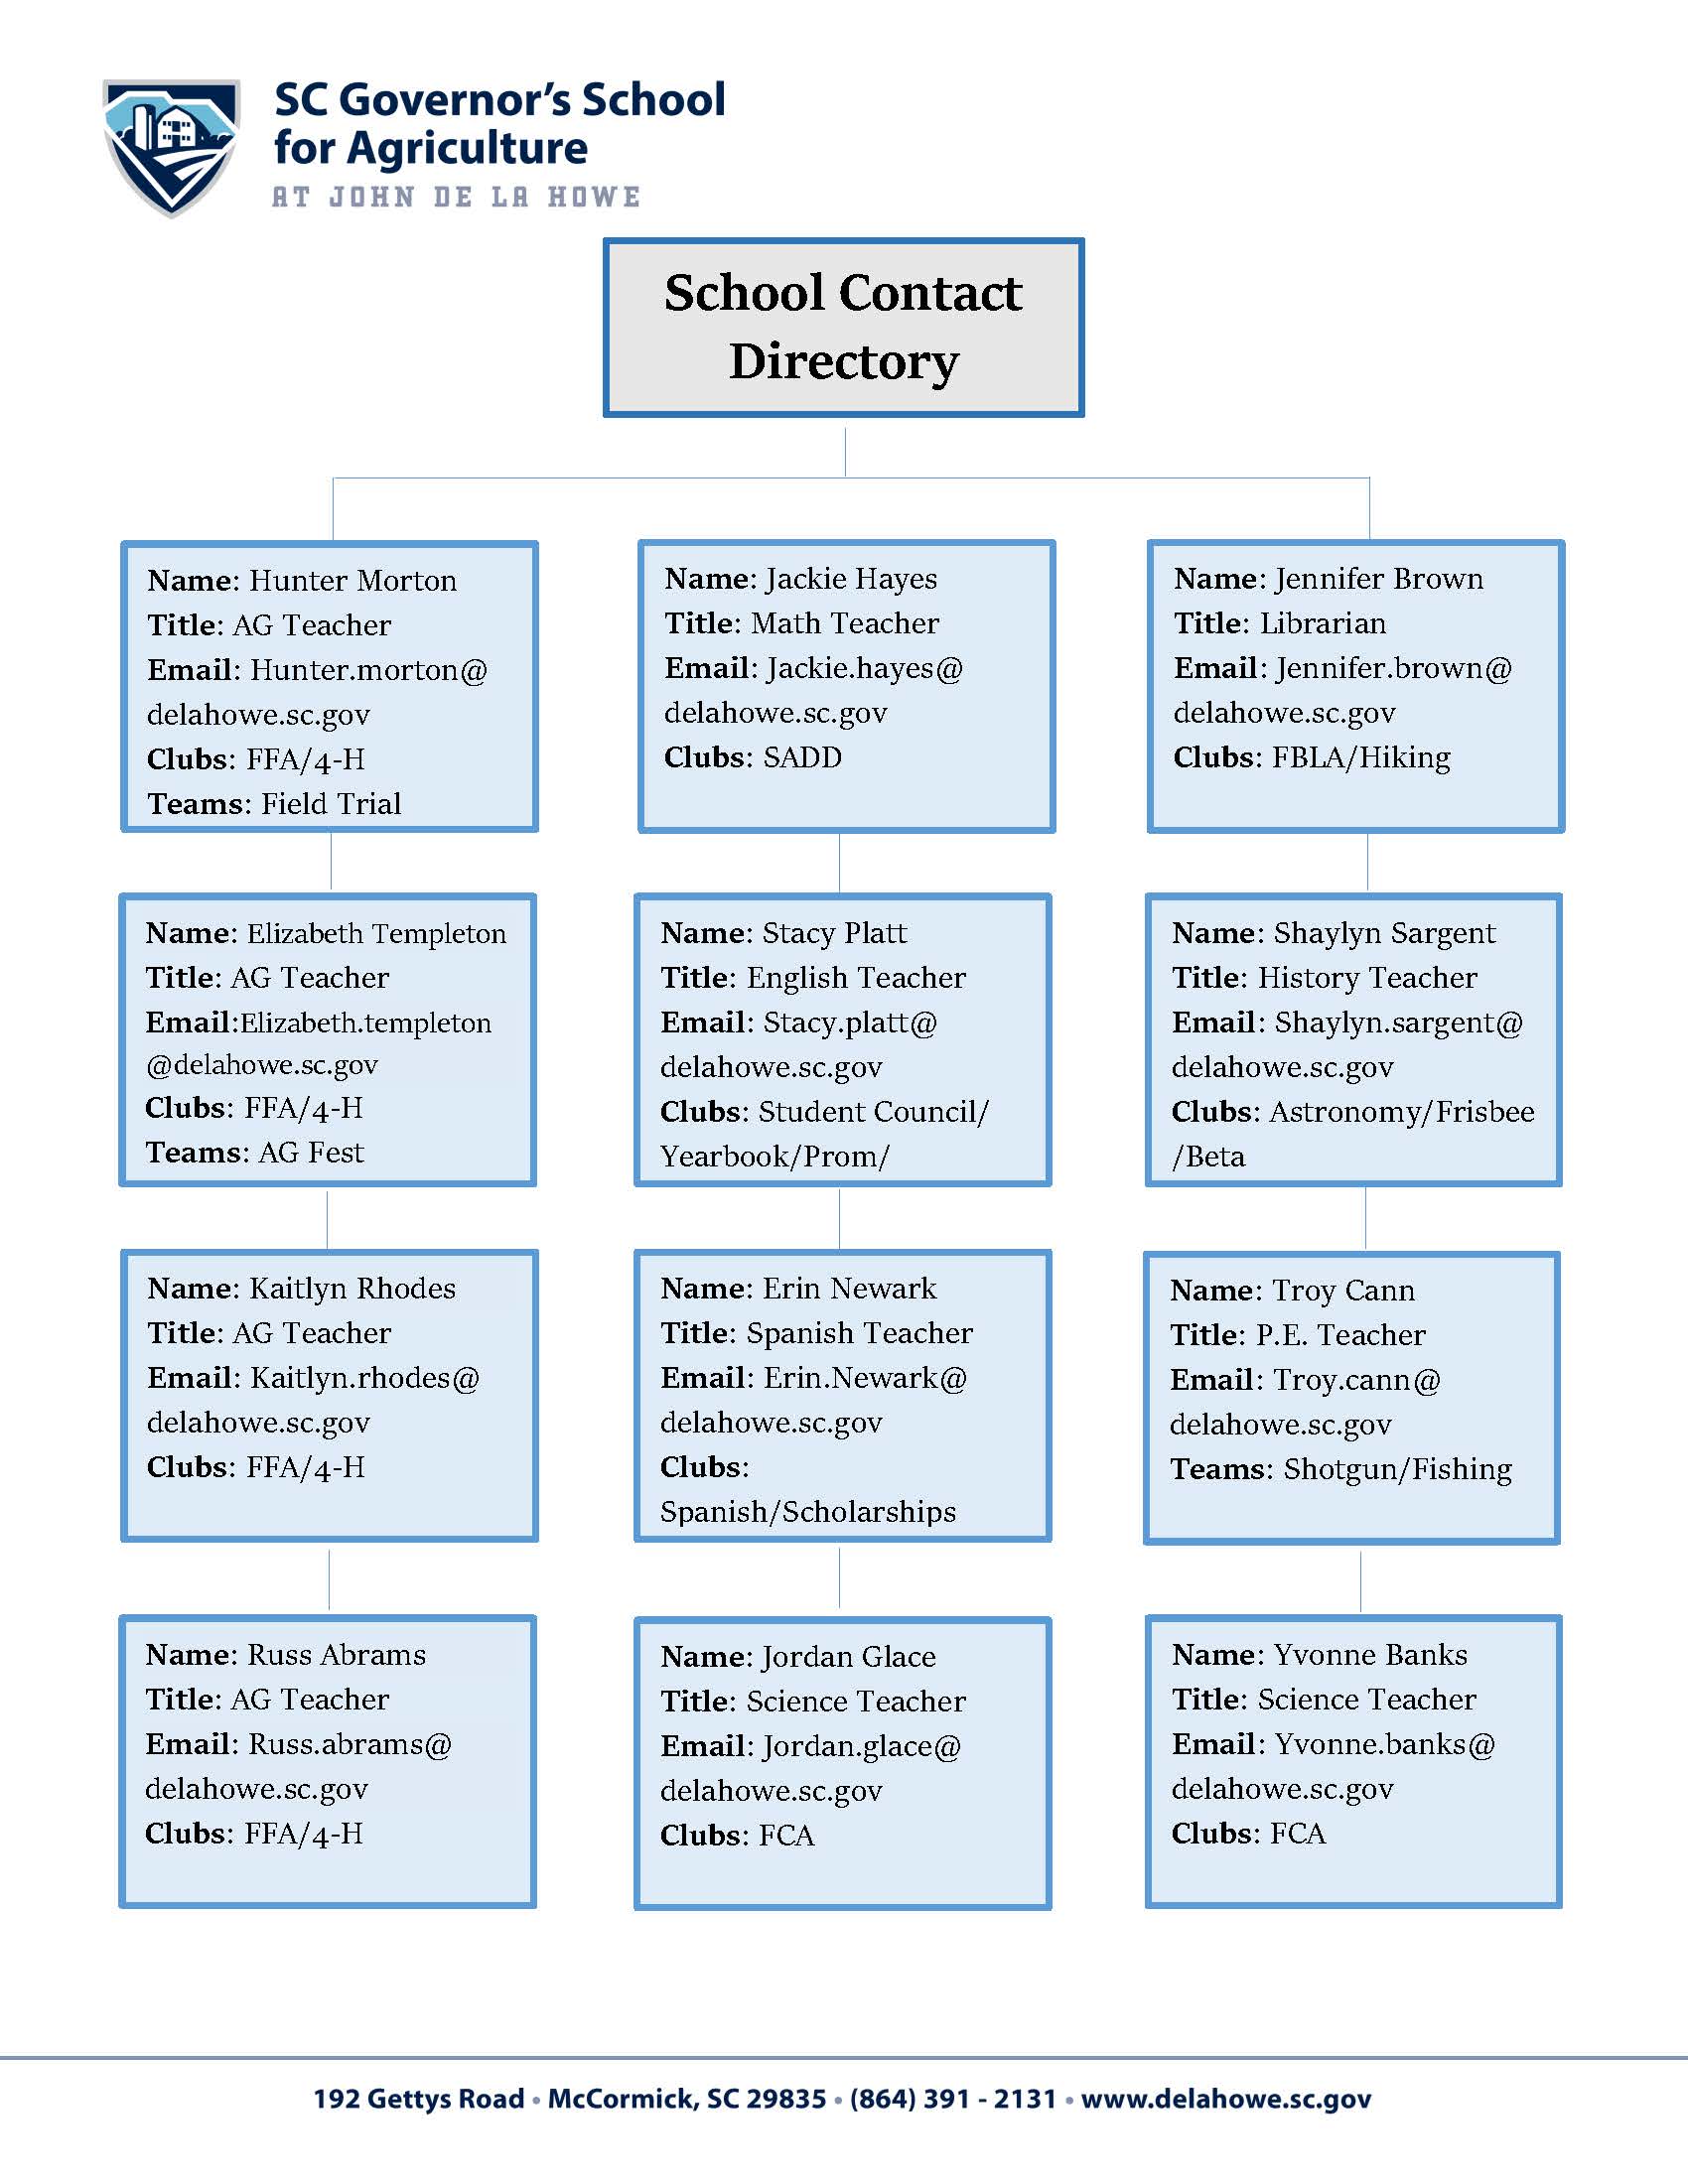 School Contact Directory